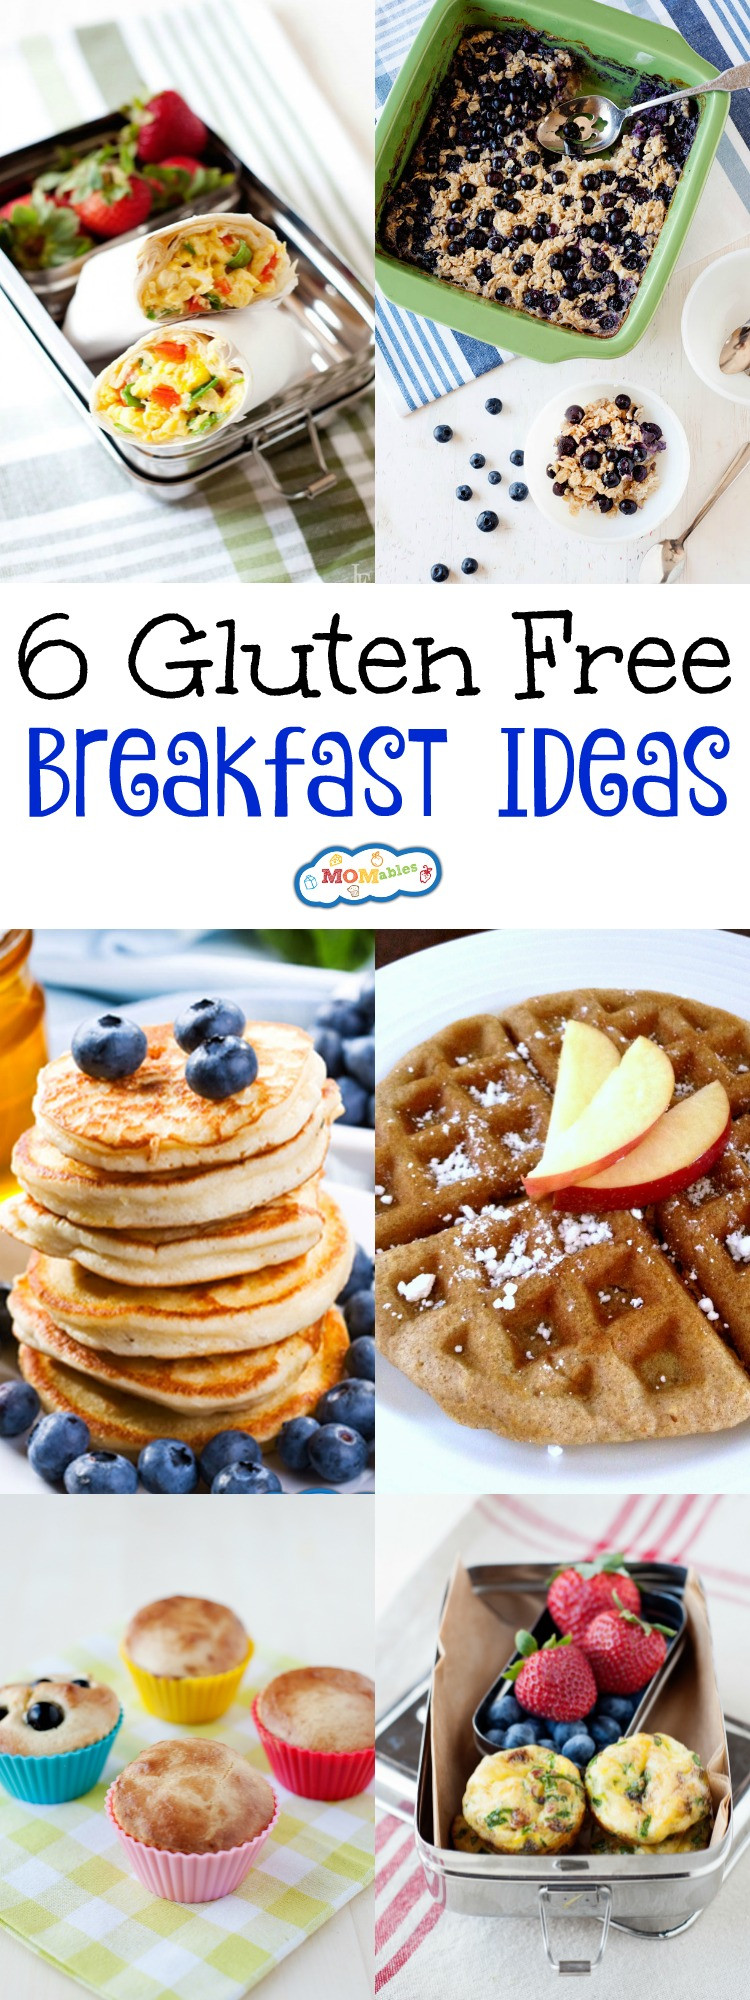 Gluten Free Dairy Free Breakfast Recipes
 6 Gluten Free Breakfast Ideas MOMables